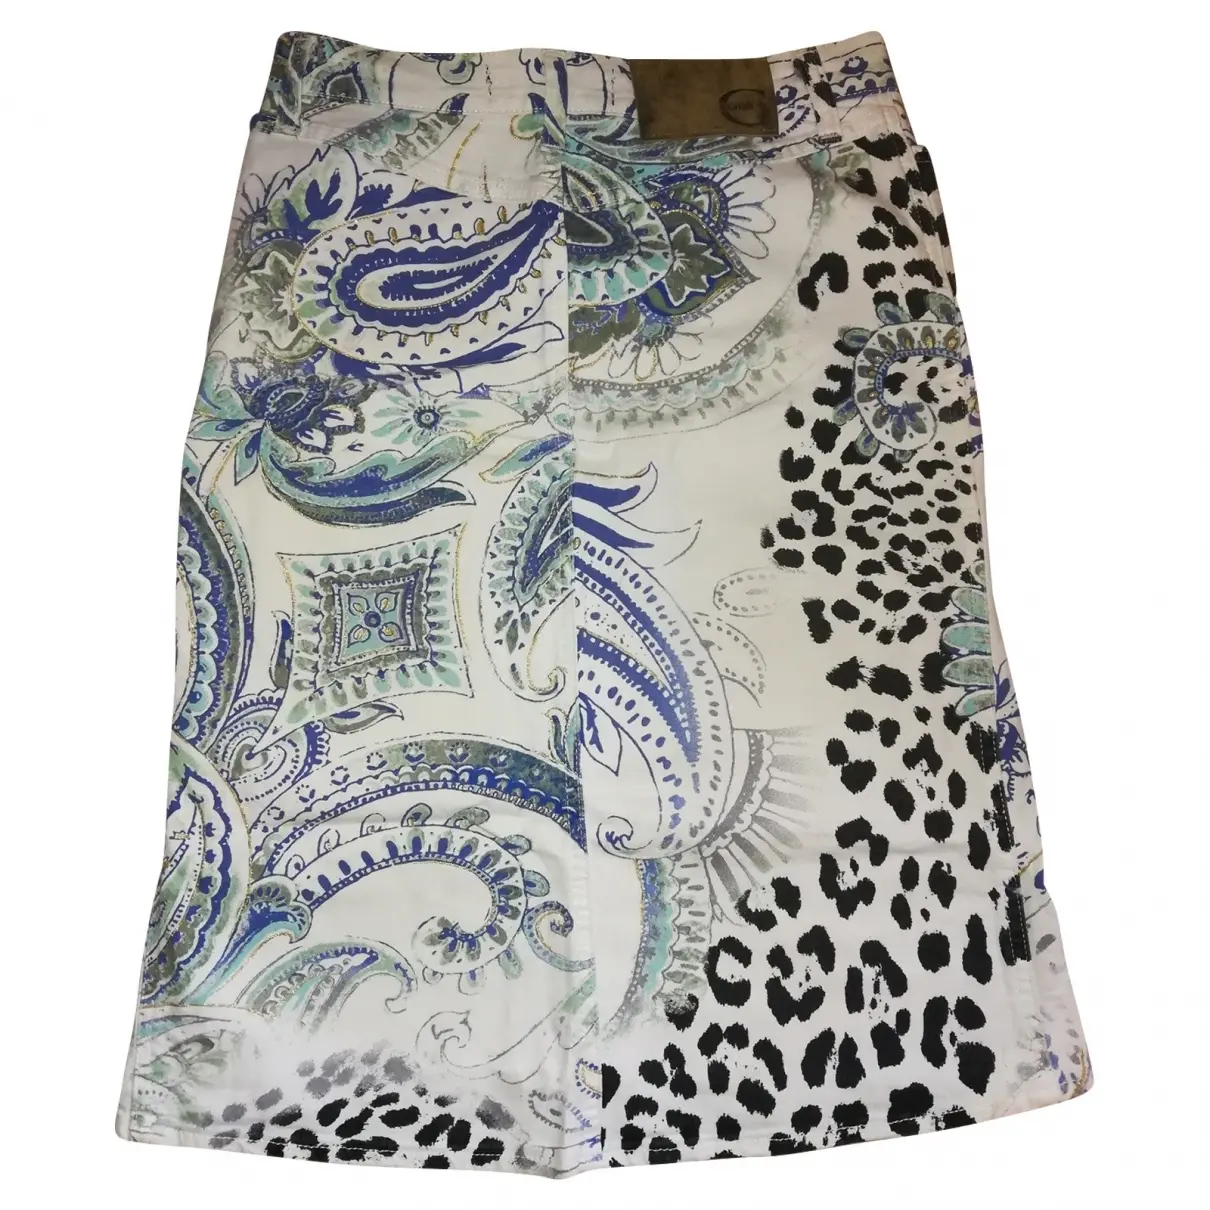 Just Cavalli Mid-length skirt for sale - Vintage